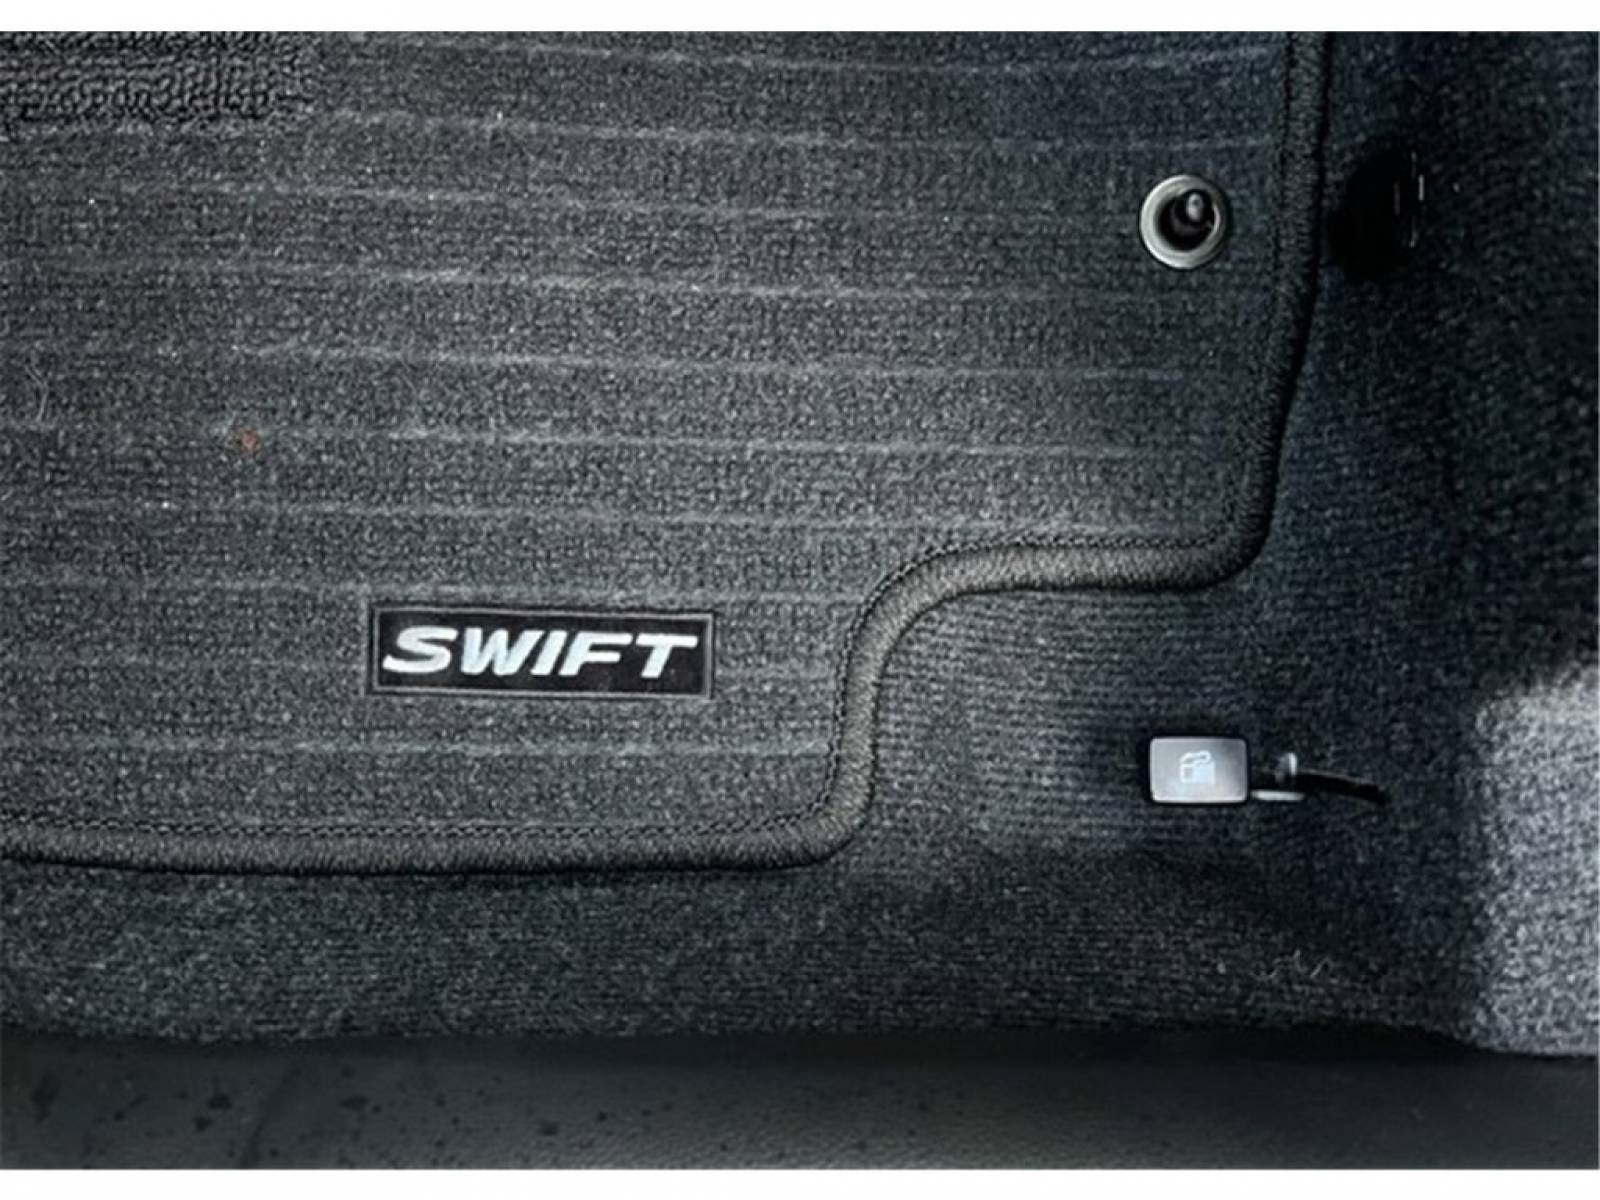 SUZUKI Swift 1.2 Dualjet Hybrid - véhicule d'occasion - Groupe Guillet - Hall de l'automobile - Montceau les Mines - 71300 - Montceau-les-Mines - 24